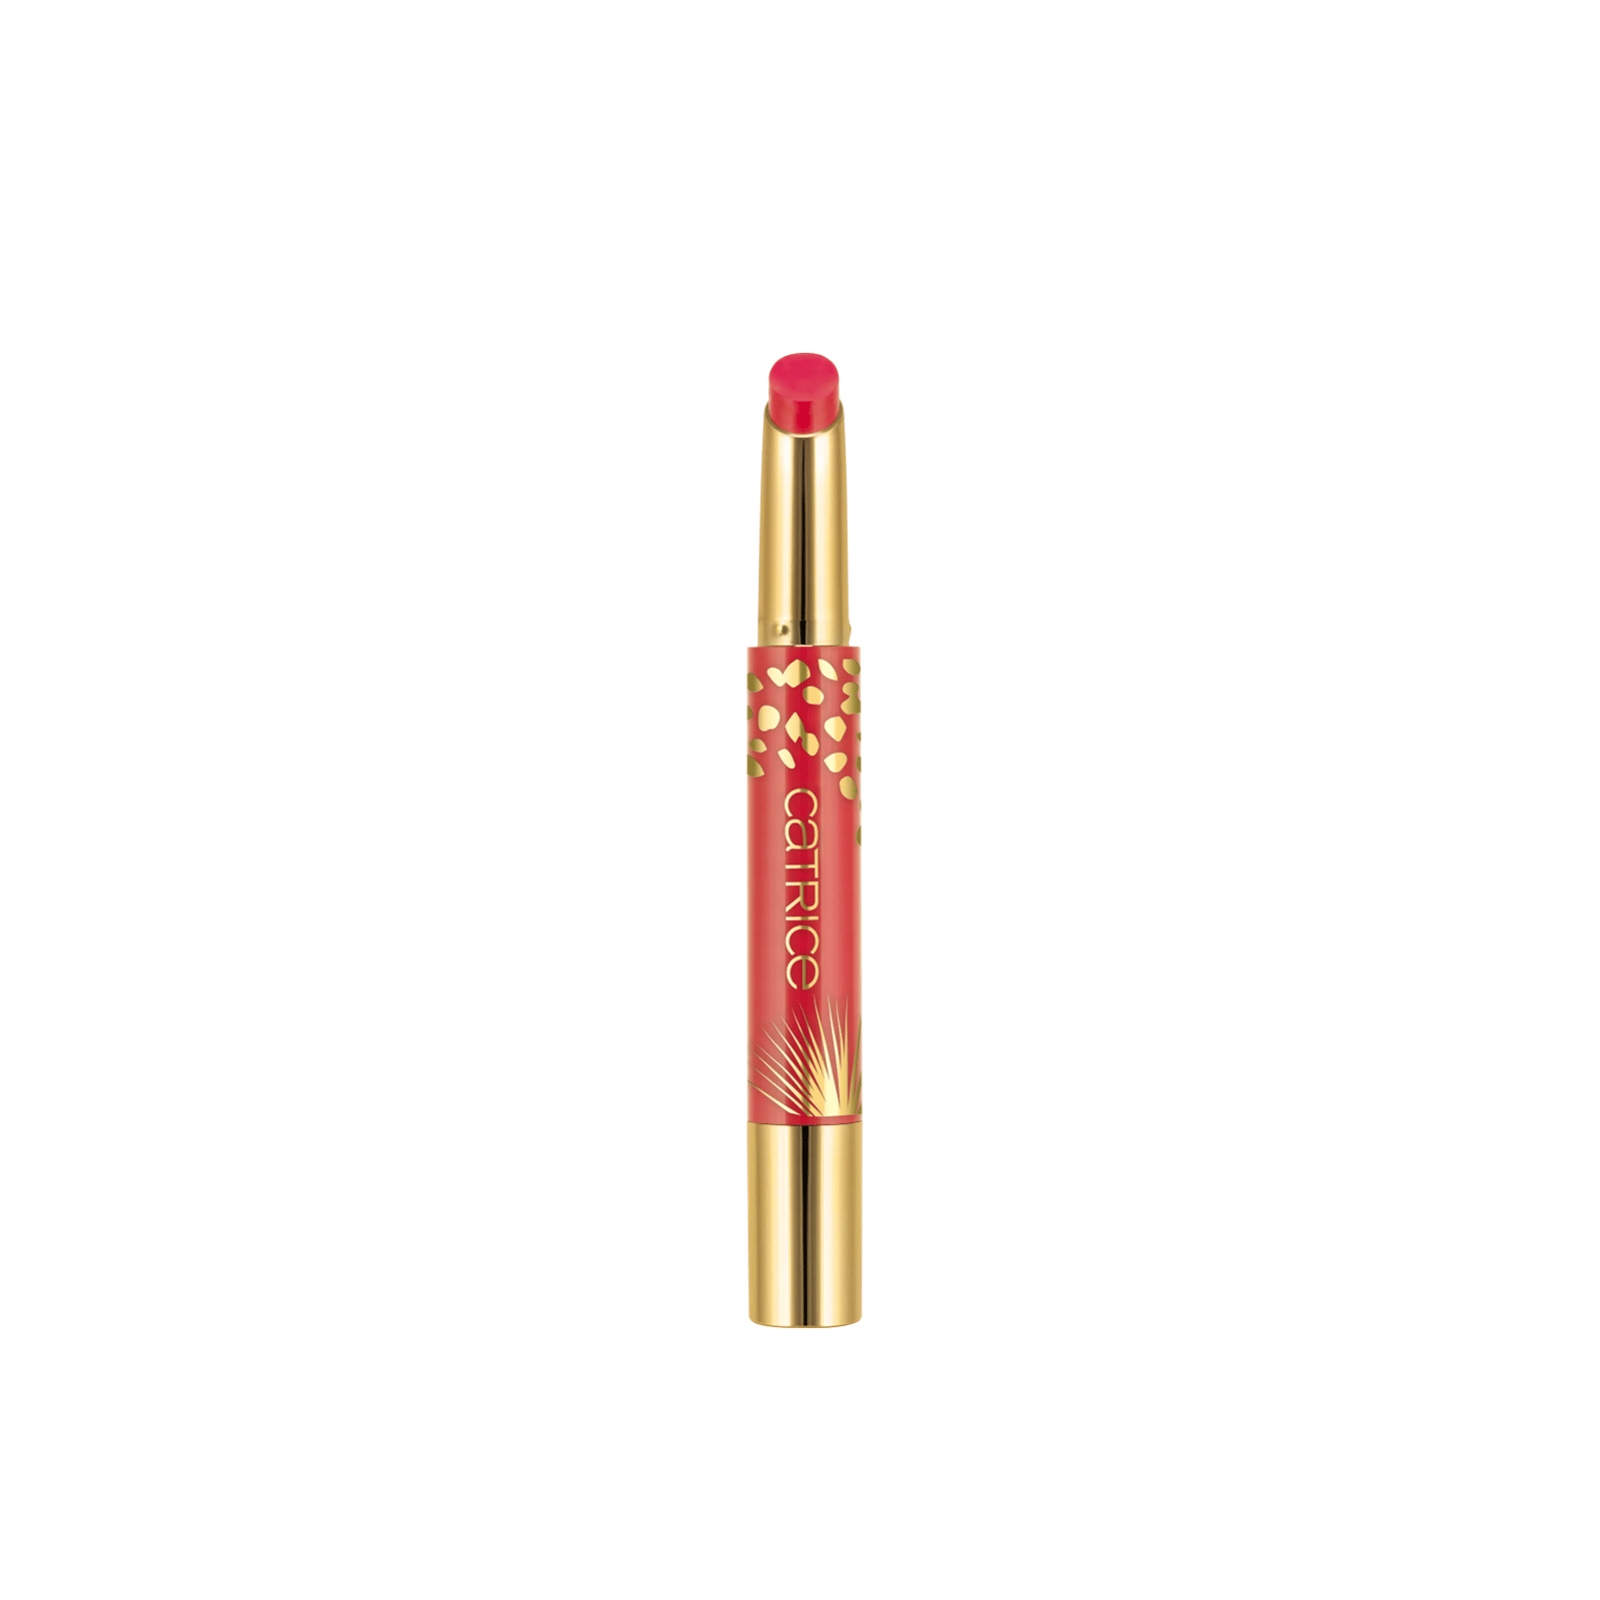 Catrice Wild Escape High Shine Lipstick Pen C01 Into The Wild 1.8g (0.06 oz)